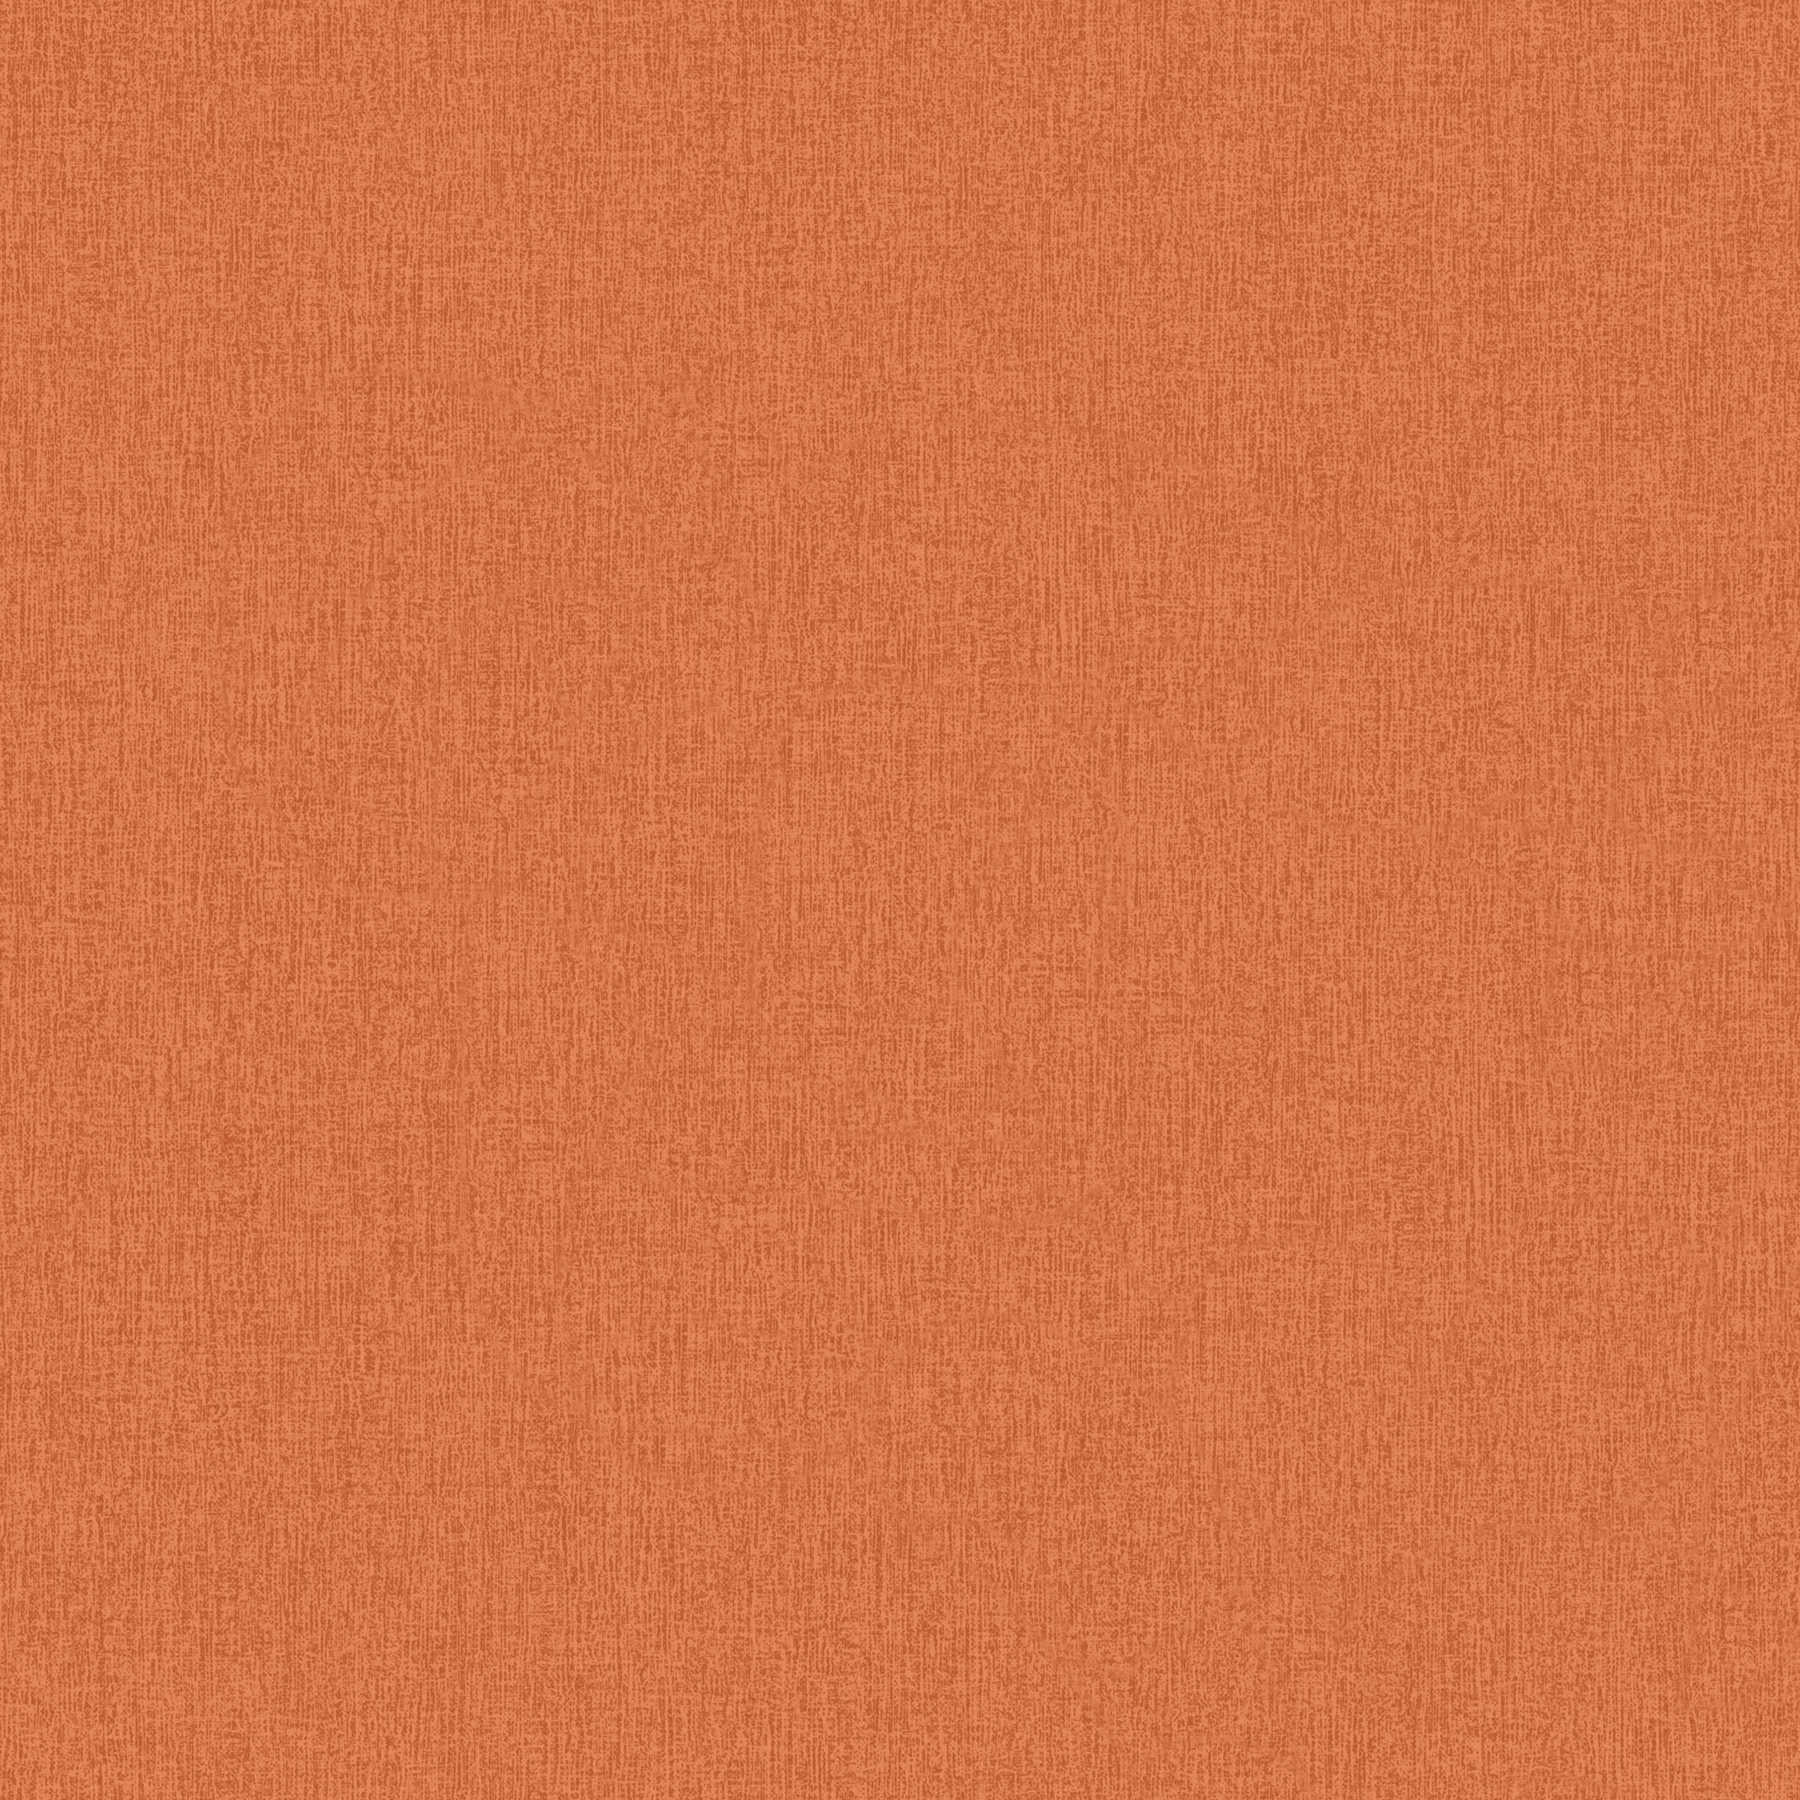 Einfarbige Tapete meliert mit Gewebestruktur – Orange
